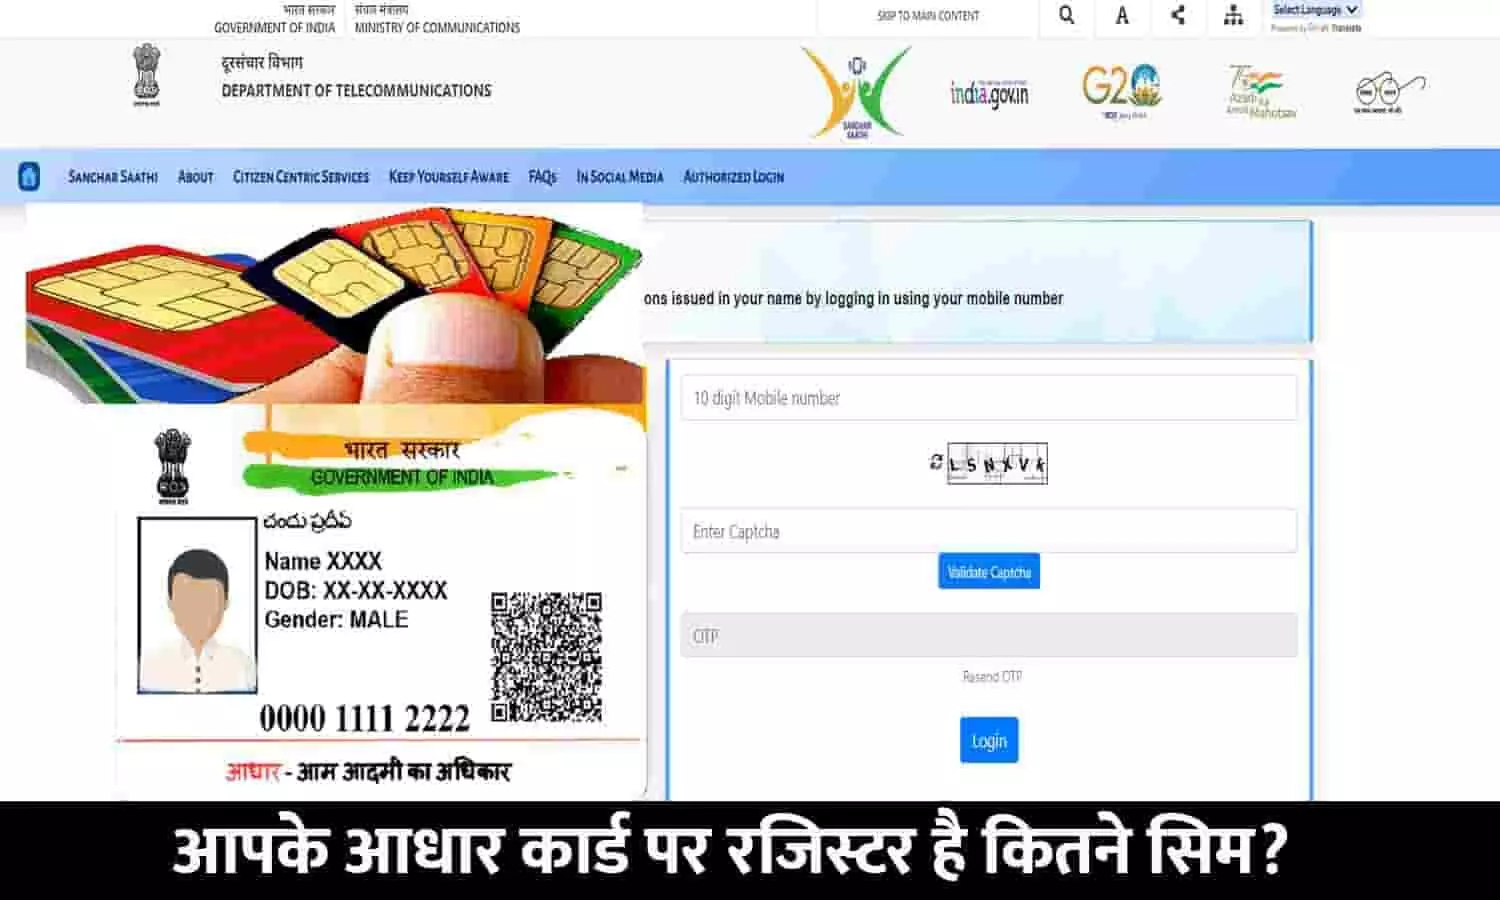 Aadhaar Card Se Kitne Sim Chalu Hai: आपके आधार कार्ड पर रजिस्टर है कितने सिम? फटाफट जाने FULL INFO